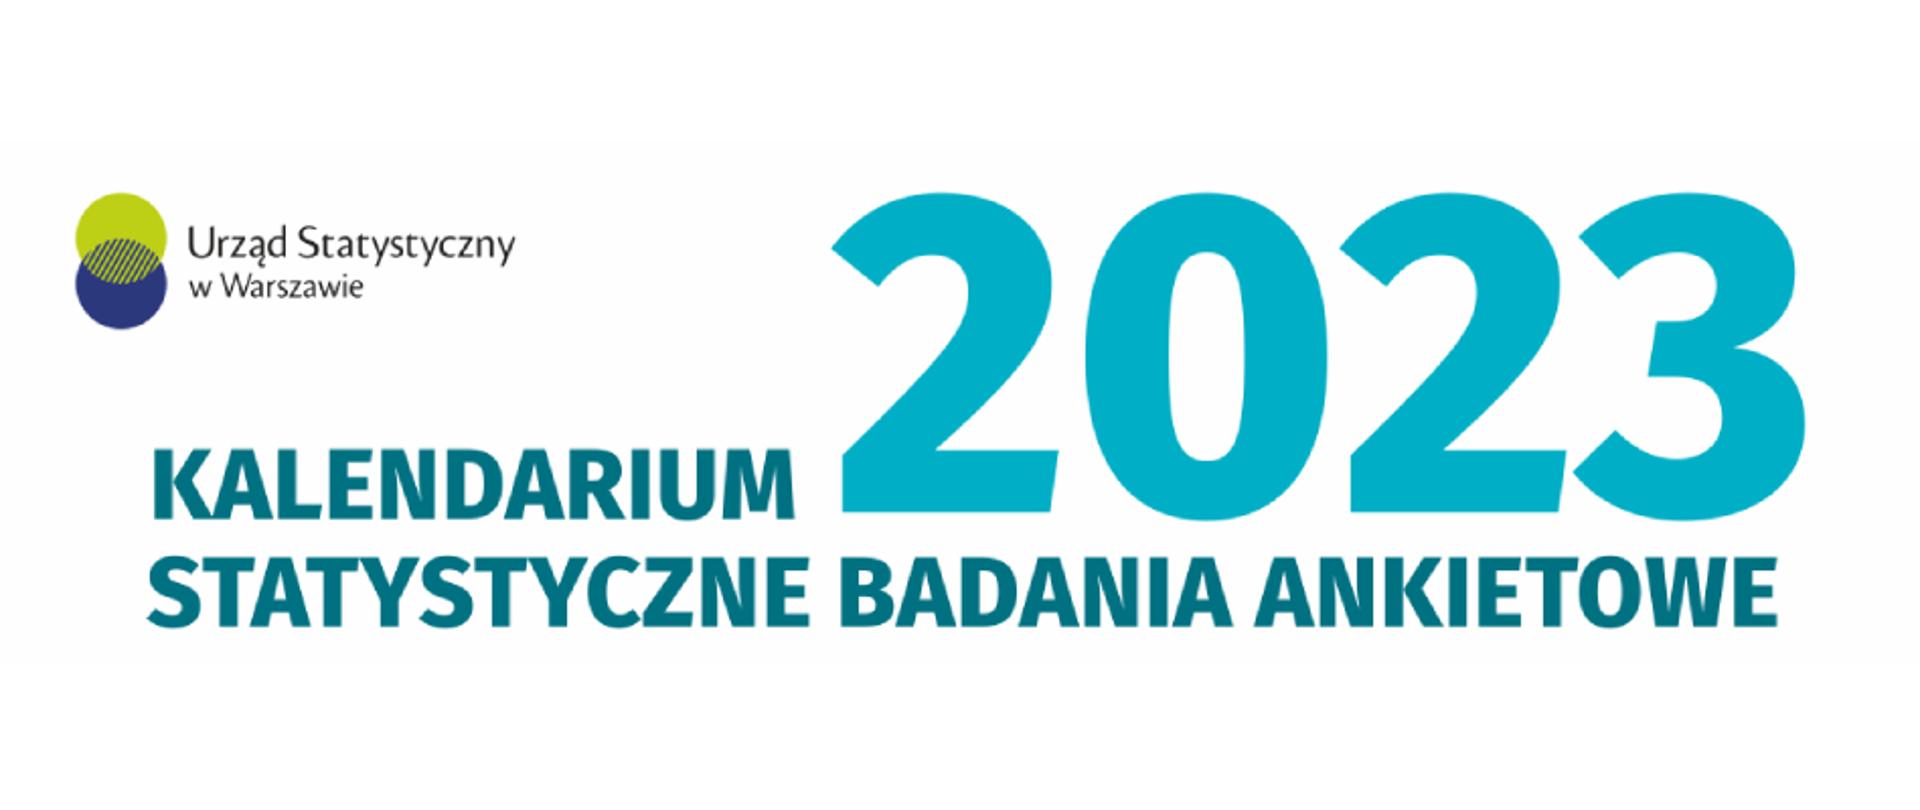 Baner z logotypem Urzędu Statystycznego w Warszawie. Na środku baneru napis Kalendarium 2023 Statystyczne Badania Ankietowe.